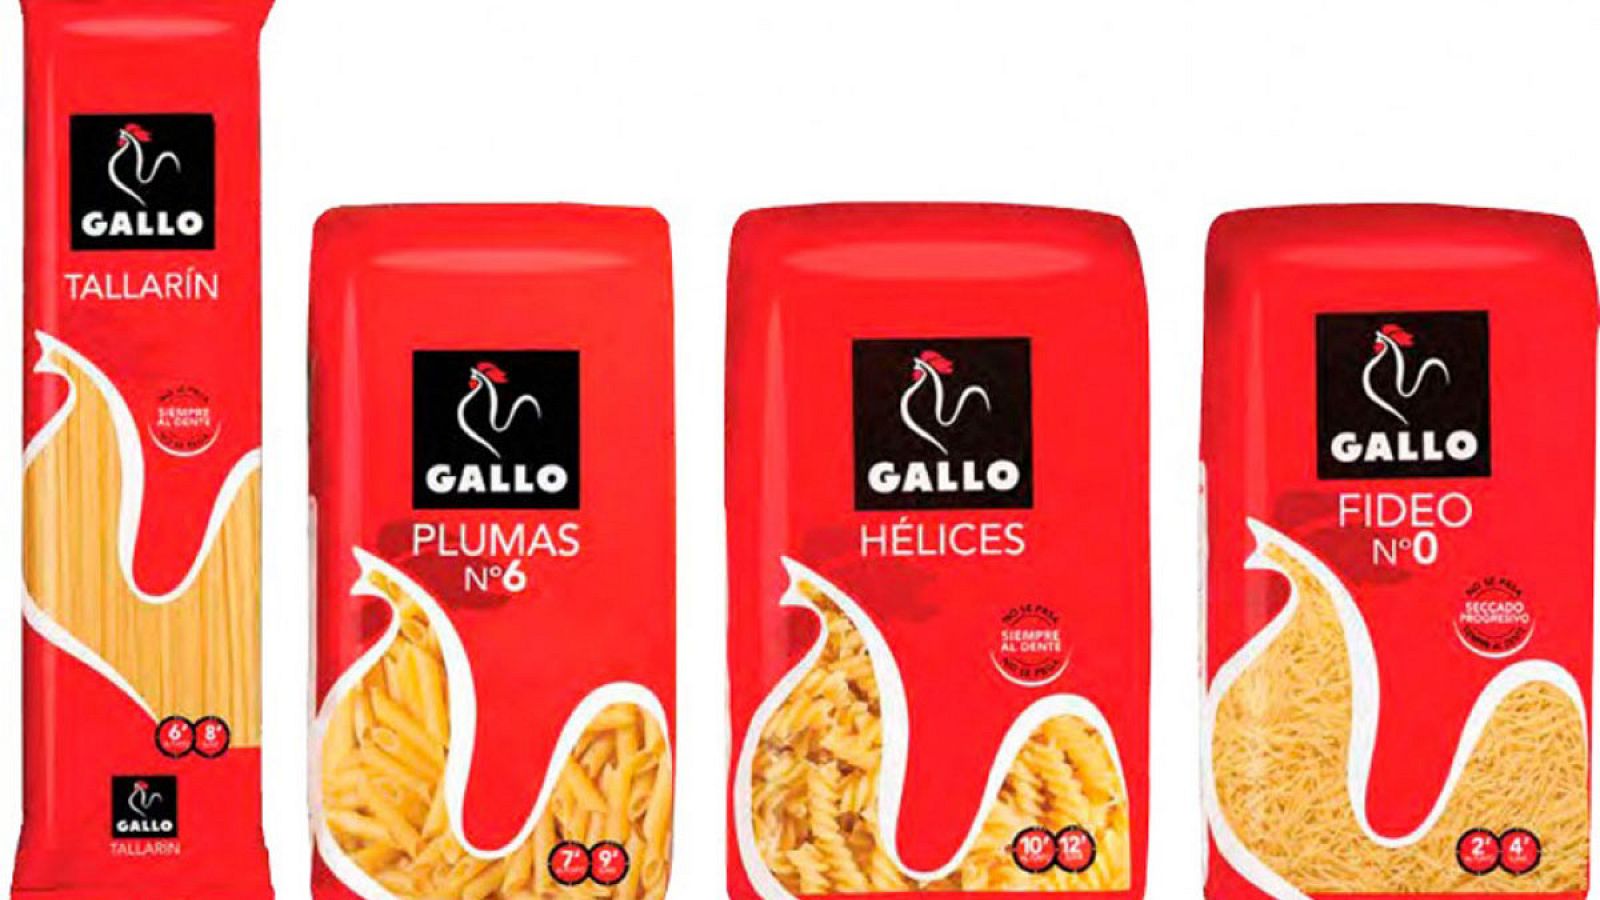 Imagen de productos Gallo